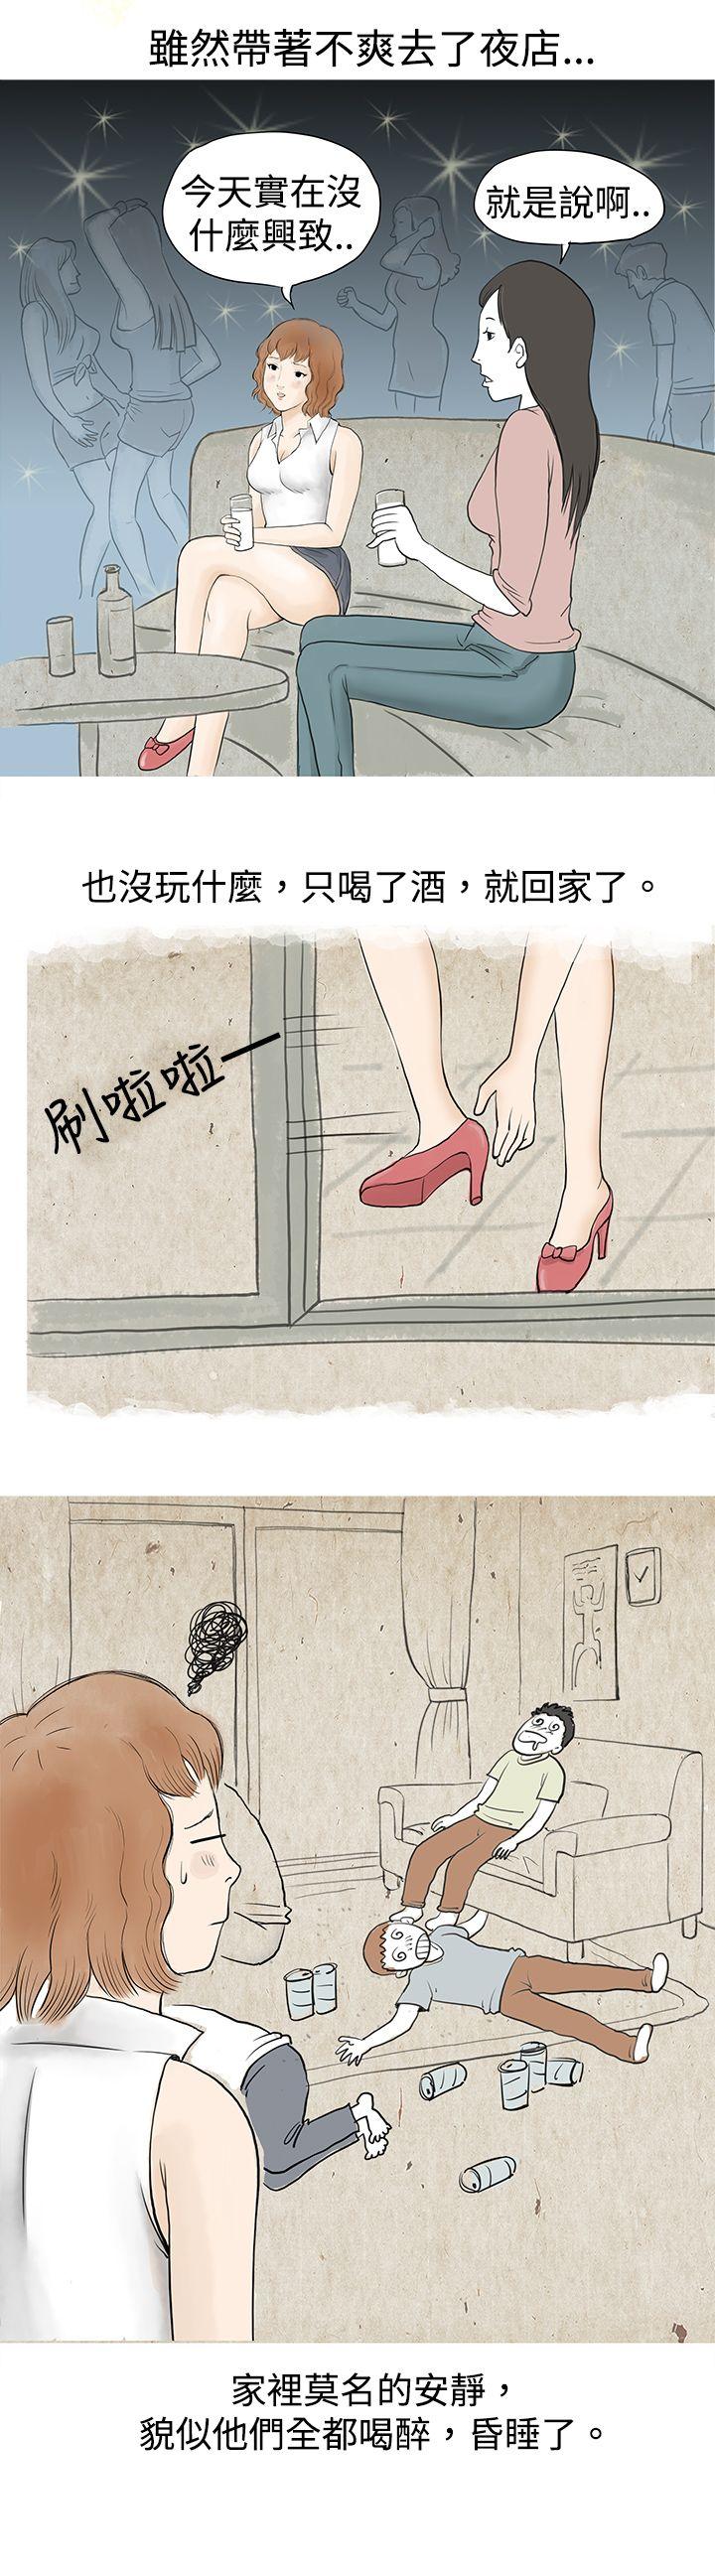 韩国污漫画 秘密Story 与哥哥的朋友在租屋...(上) 14